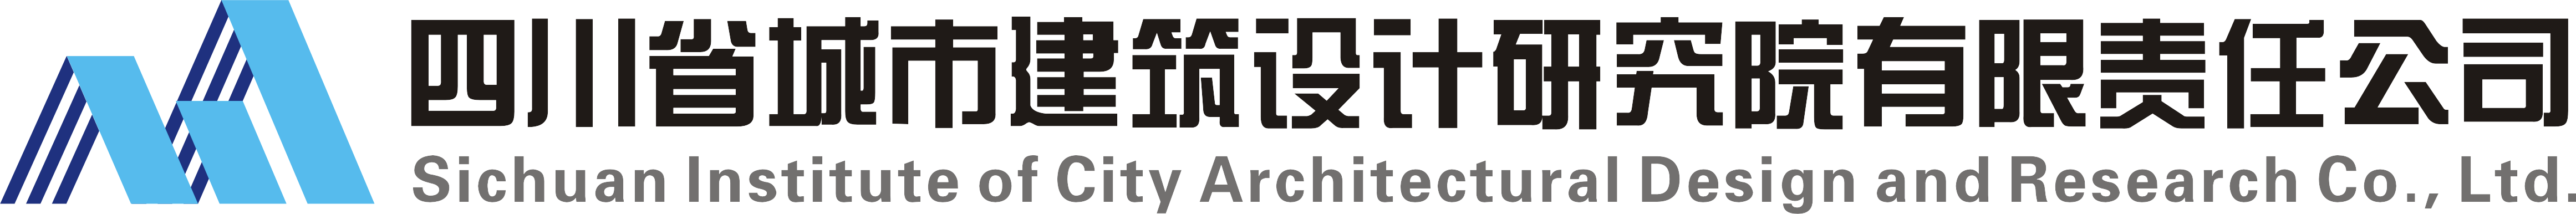 四川省城市建筑設計研究院